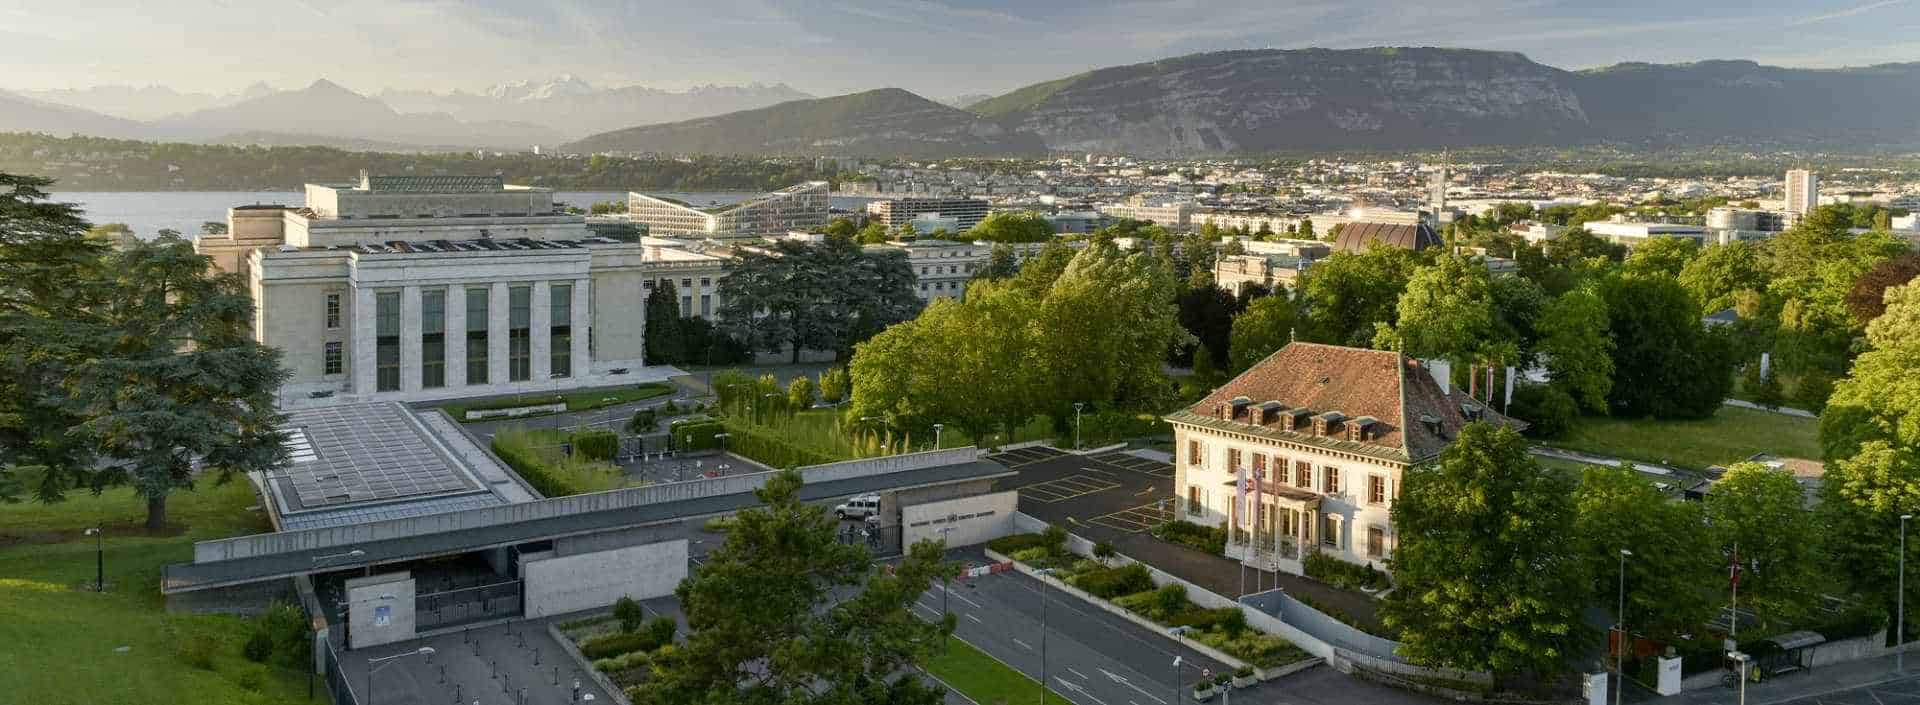 Les Relations Publiques de l'Ecole Hôtelière de Genève, l'écrin de verdureau bord du lac léman en Suisse